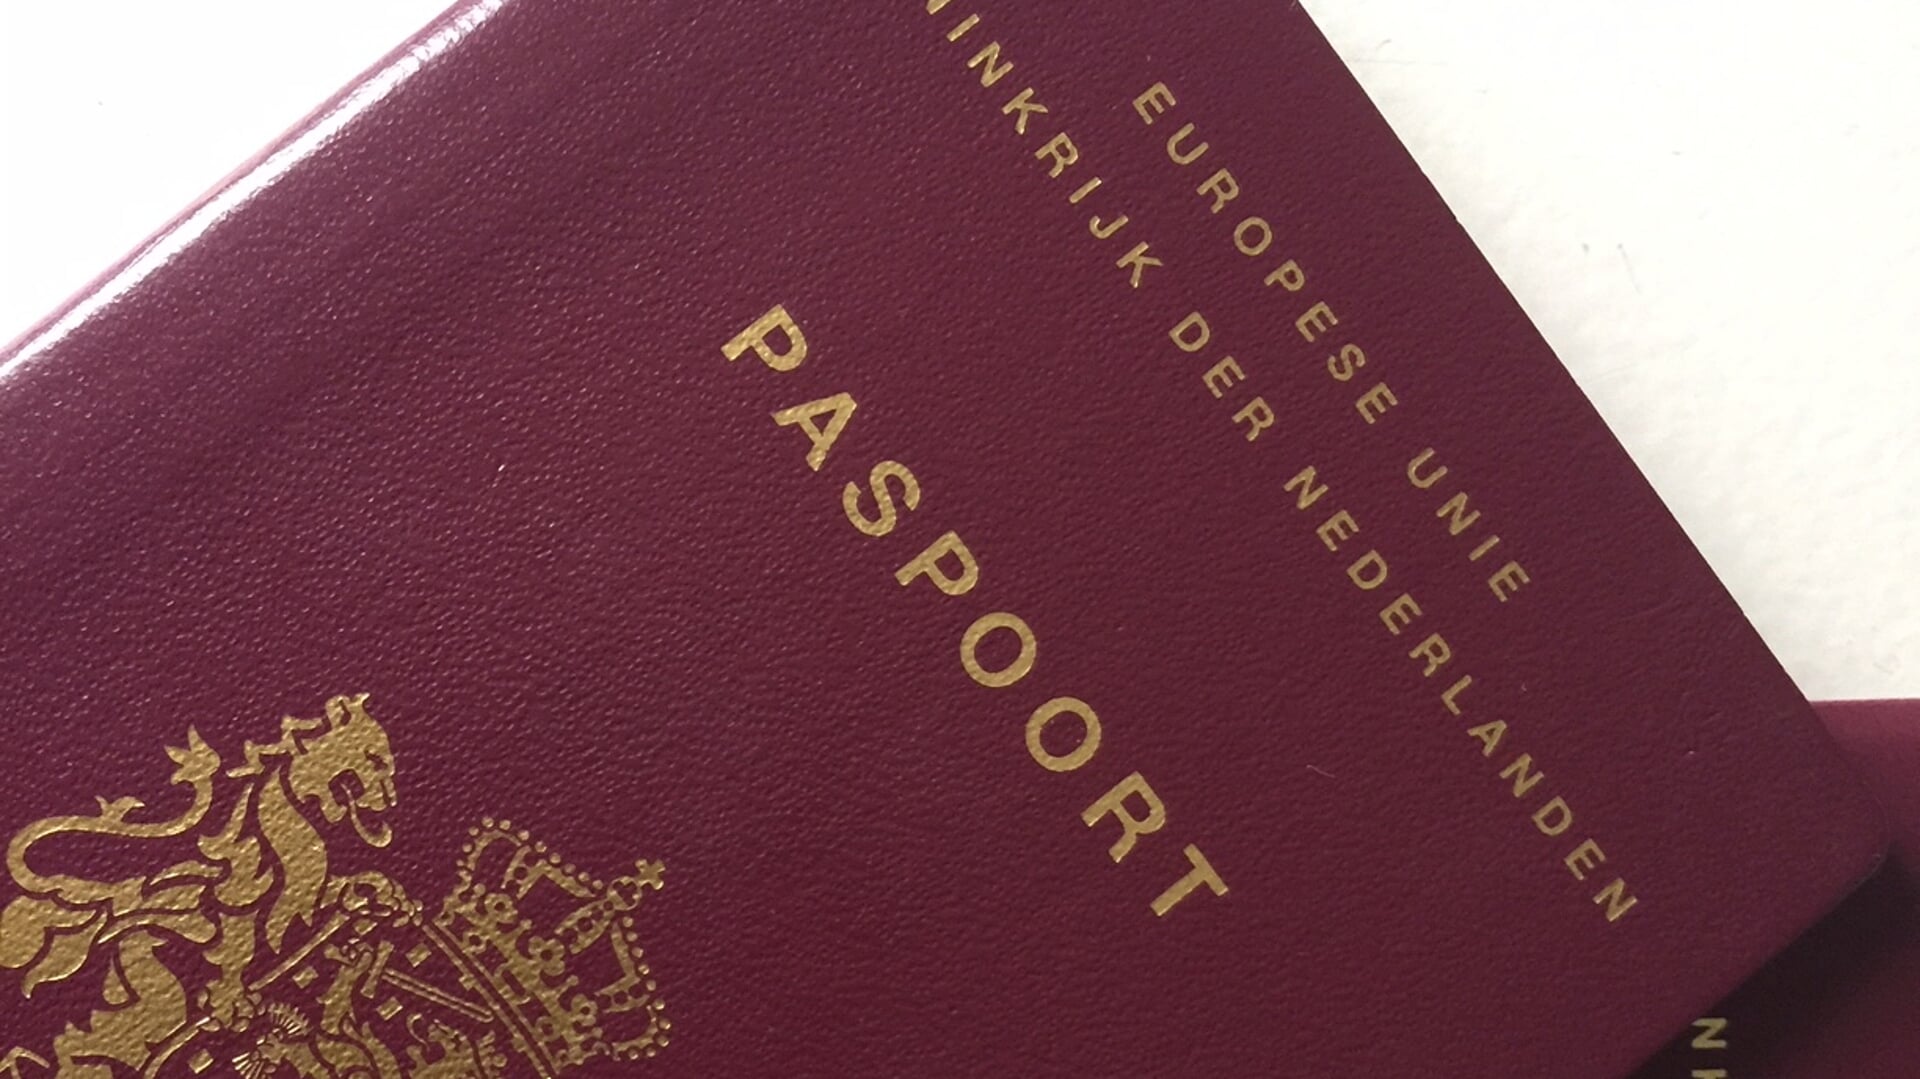 Je kunt een pasfoto maken in Alphen aan den Rijn voor bijvoorbeeld een ID-kaart, paspoort of rijbewijs.